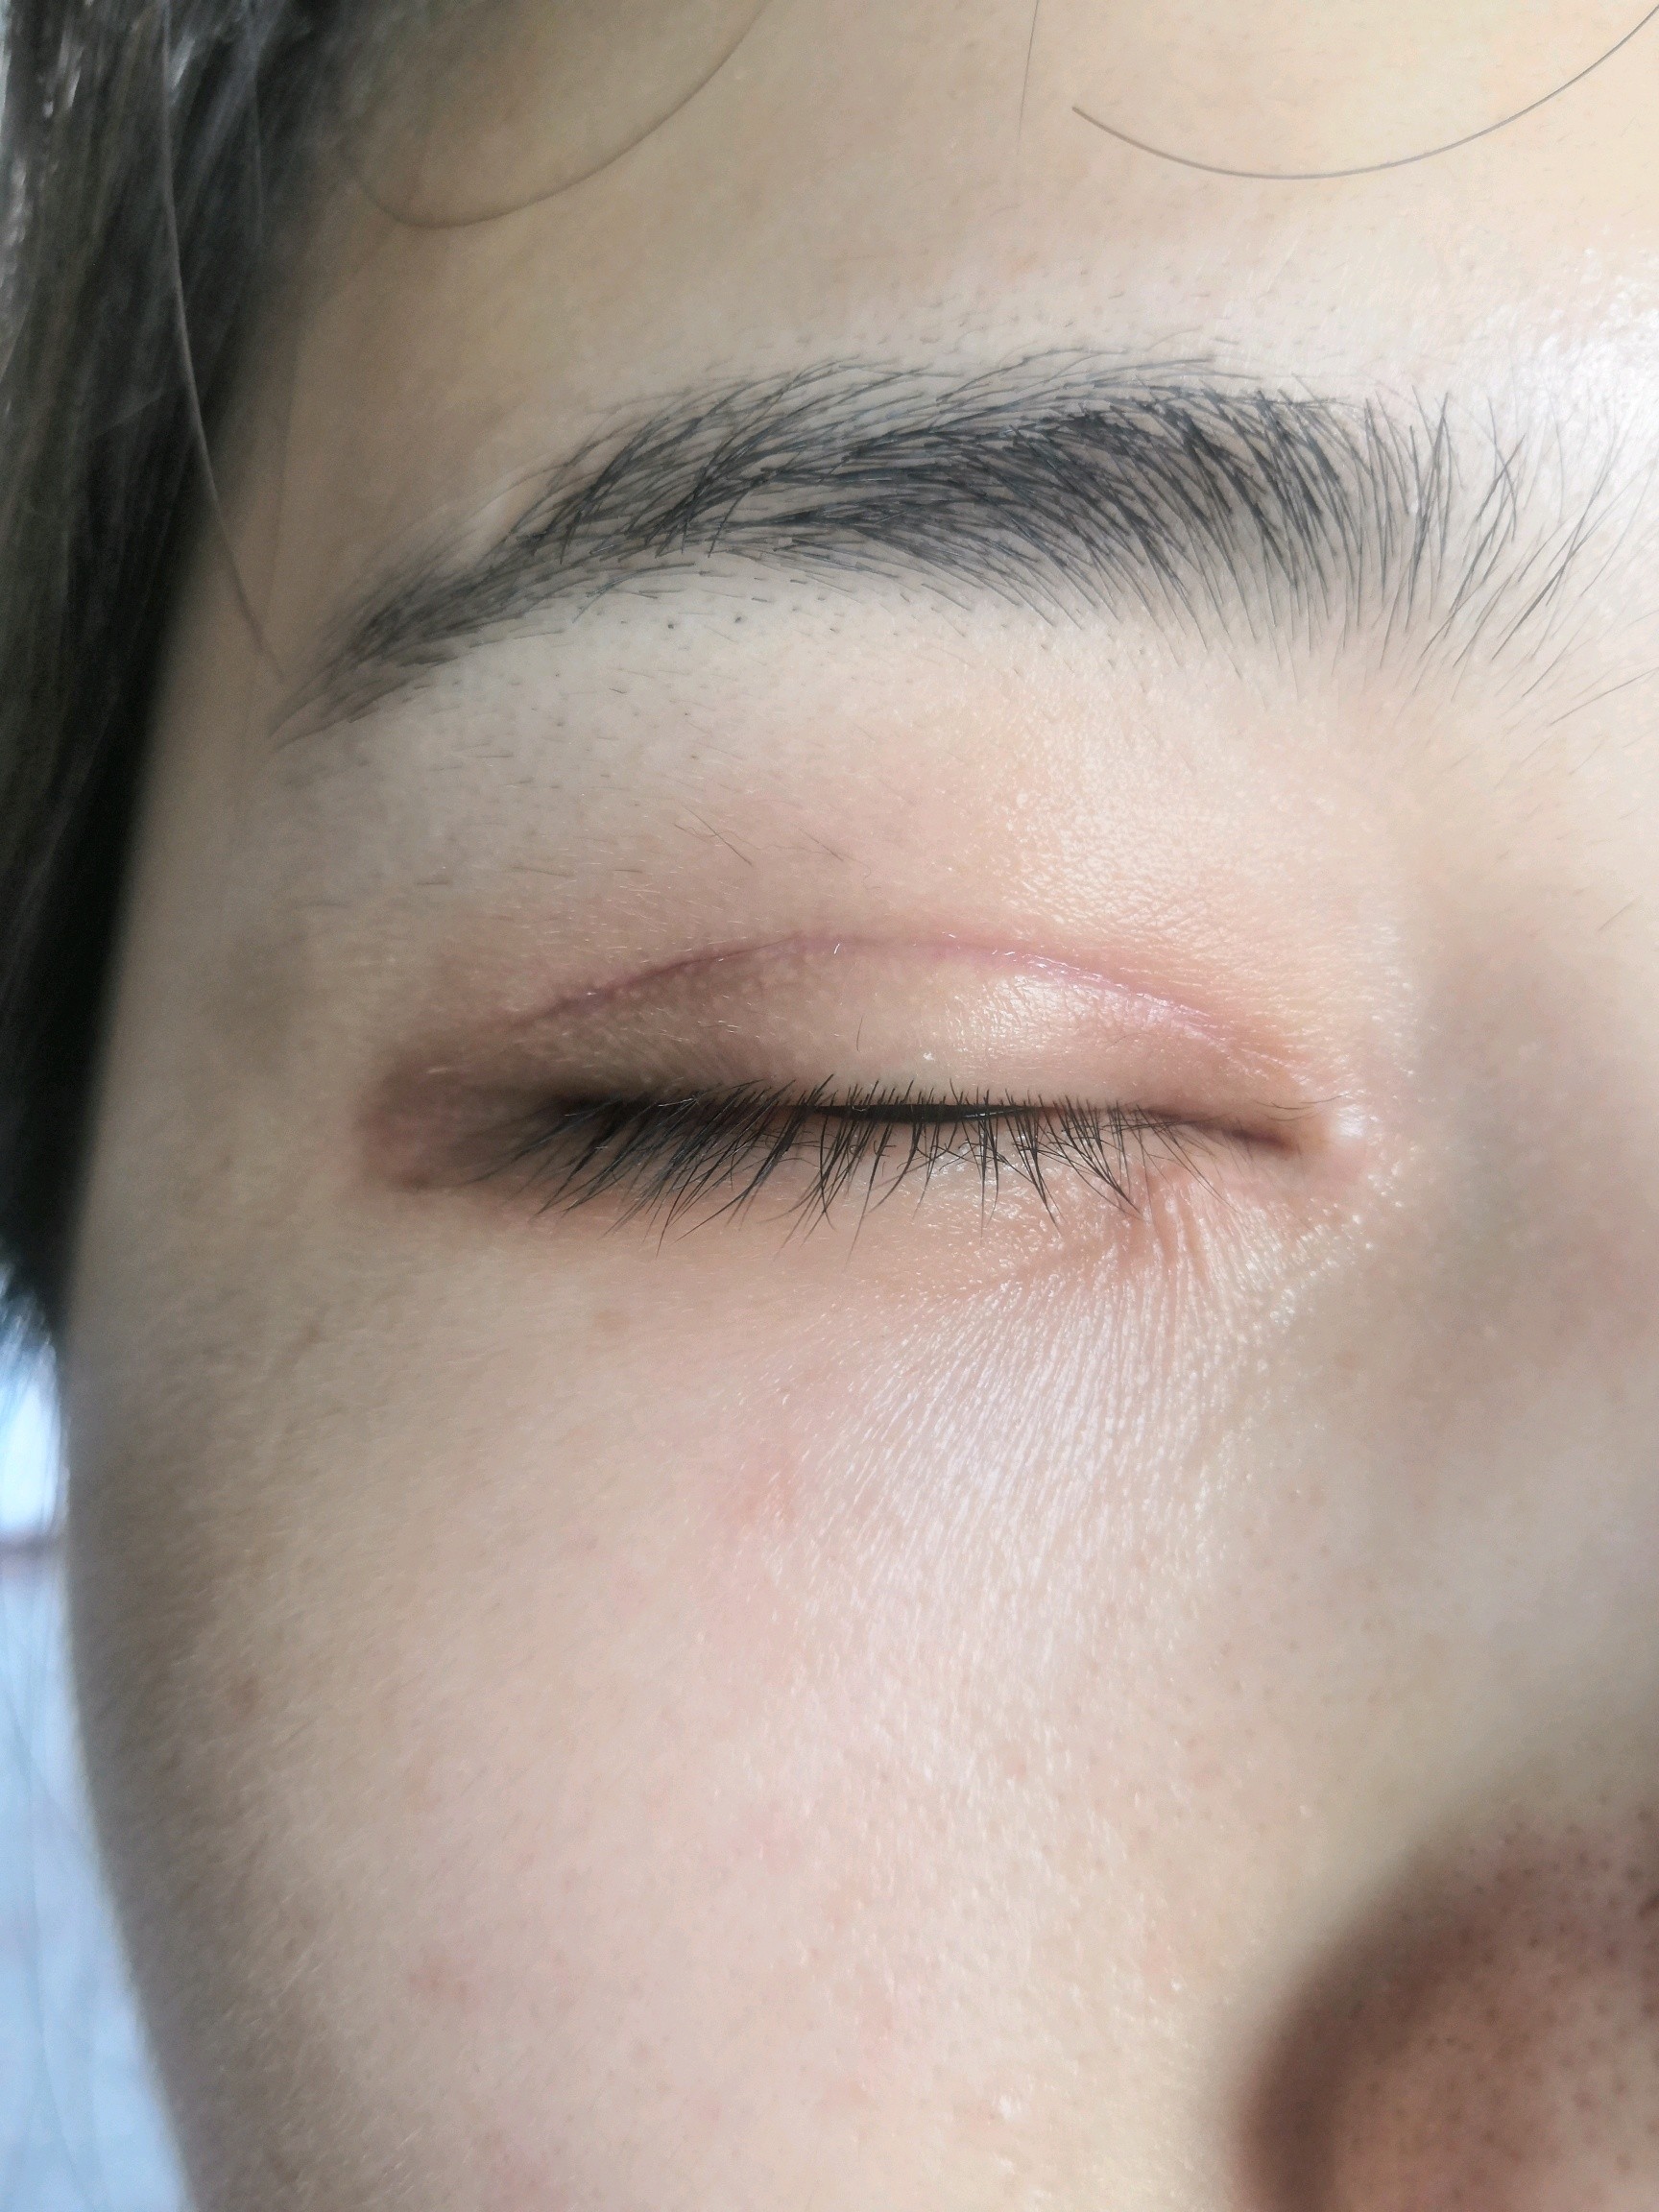 割完双眼皮第79天,左眼角的疤痕自然明显,右眼角有